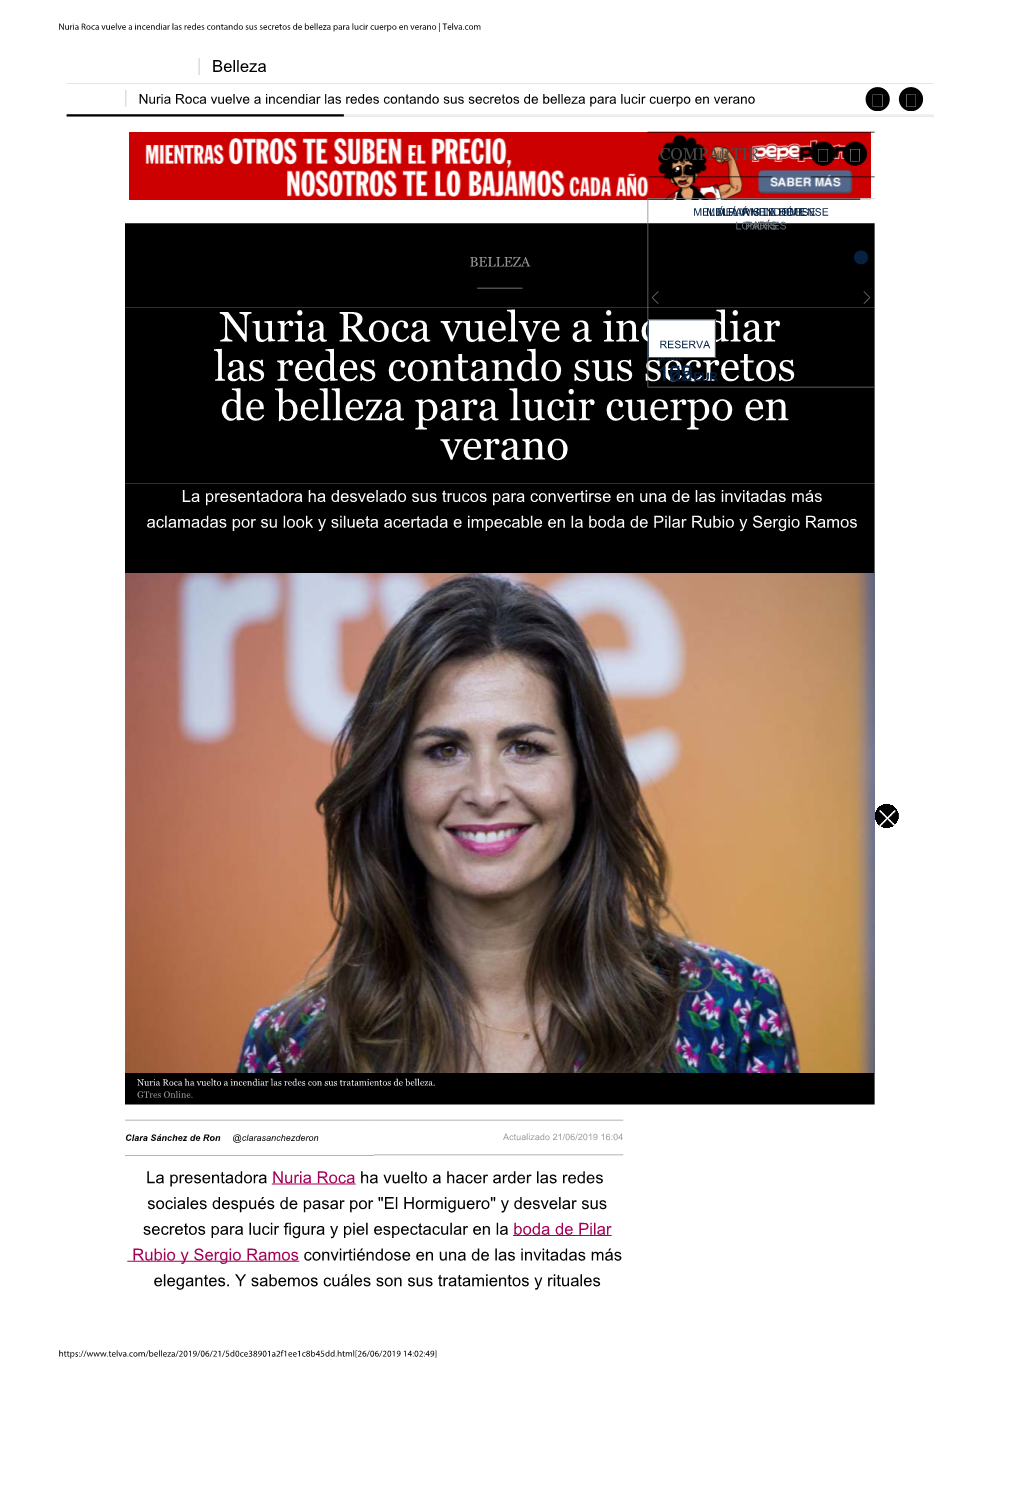 Nuria Roca Vuelve a Incendiar Las Redes Contando Sus Secretos De Belleza Para Lucir Cuerpo En Verano | Telva.Com